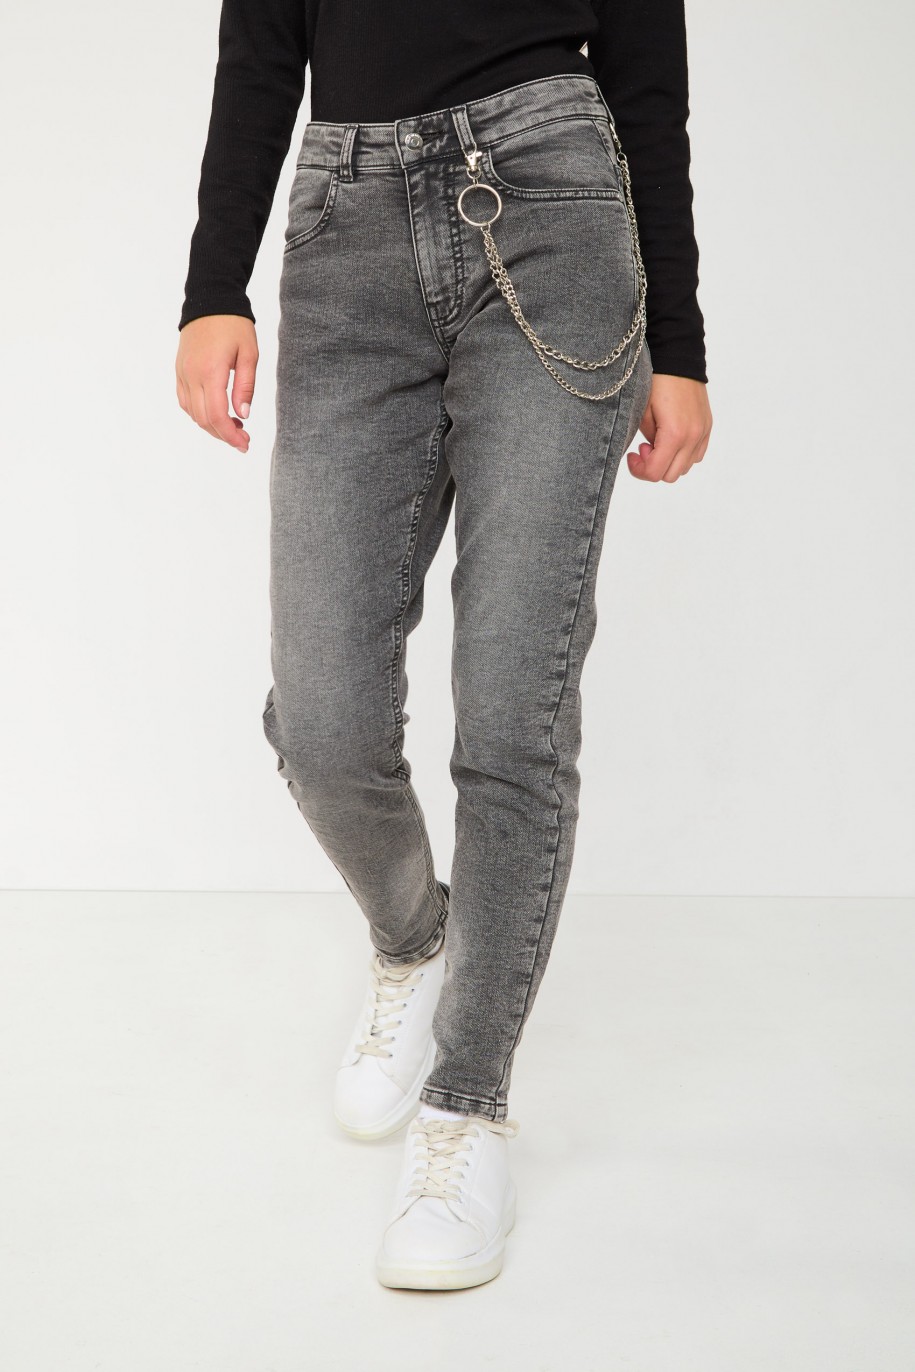 Szare jeansowe spodnie typu BAGGY - 43844